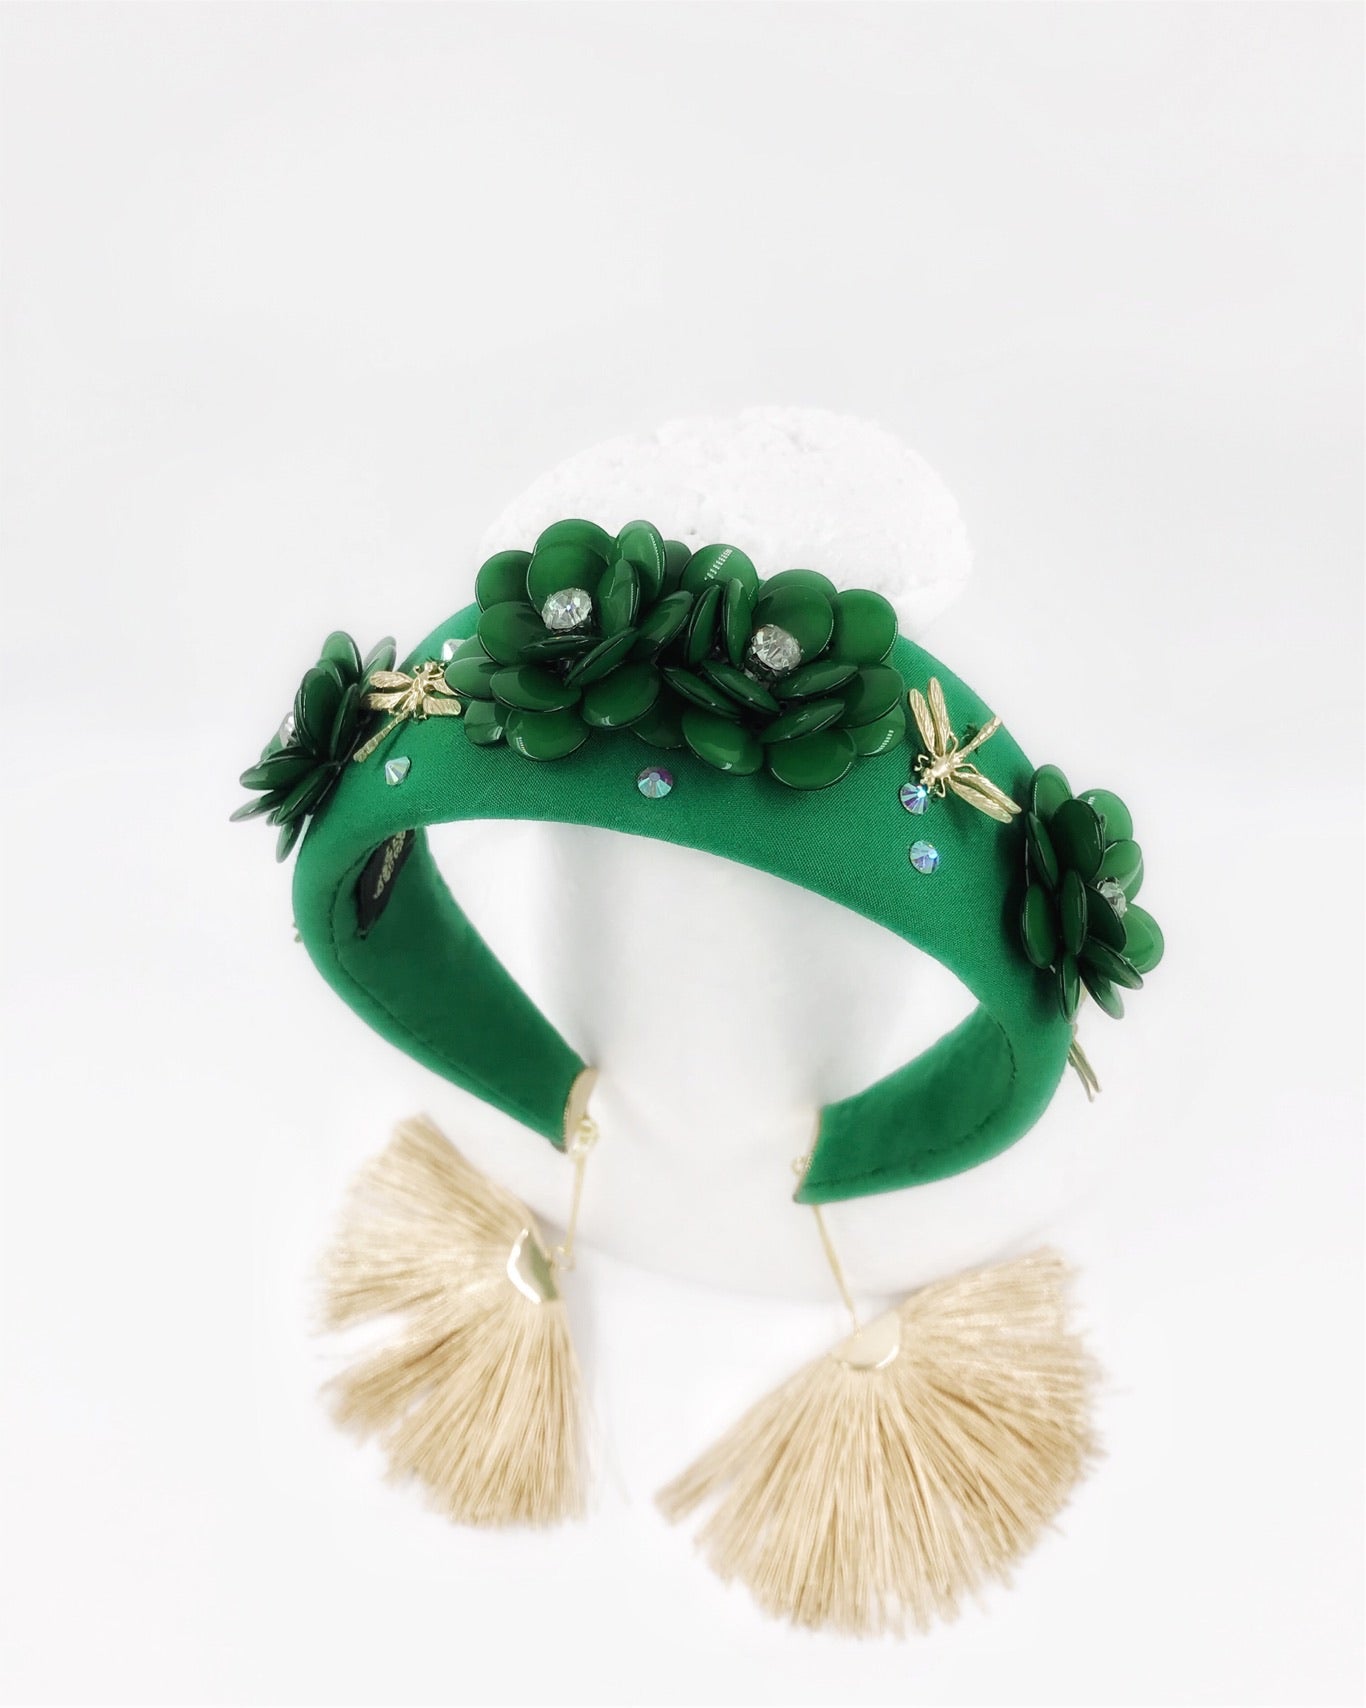 D-Headband , headpiece fashion headband , green headband